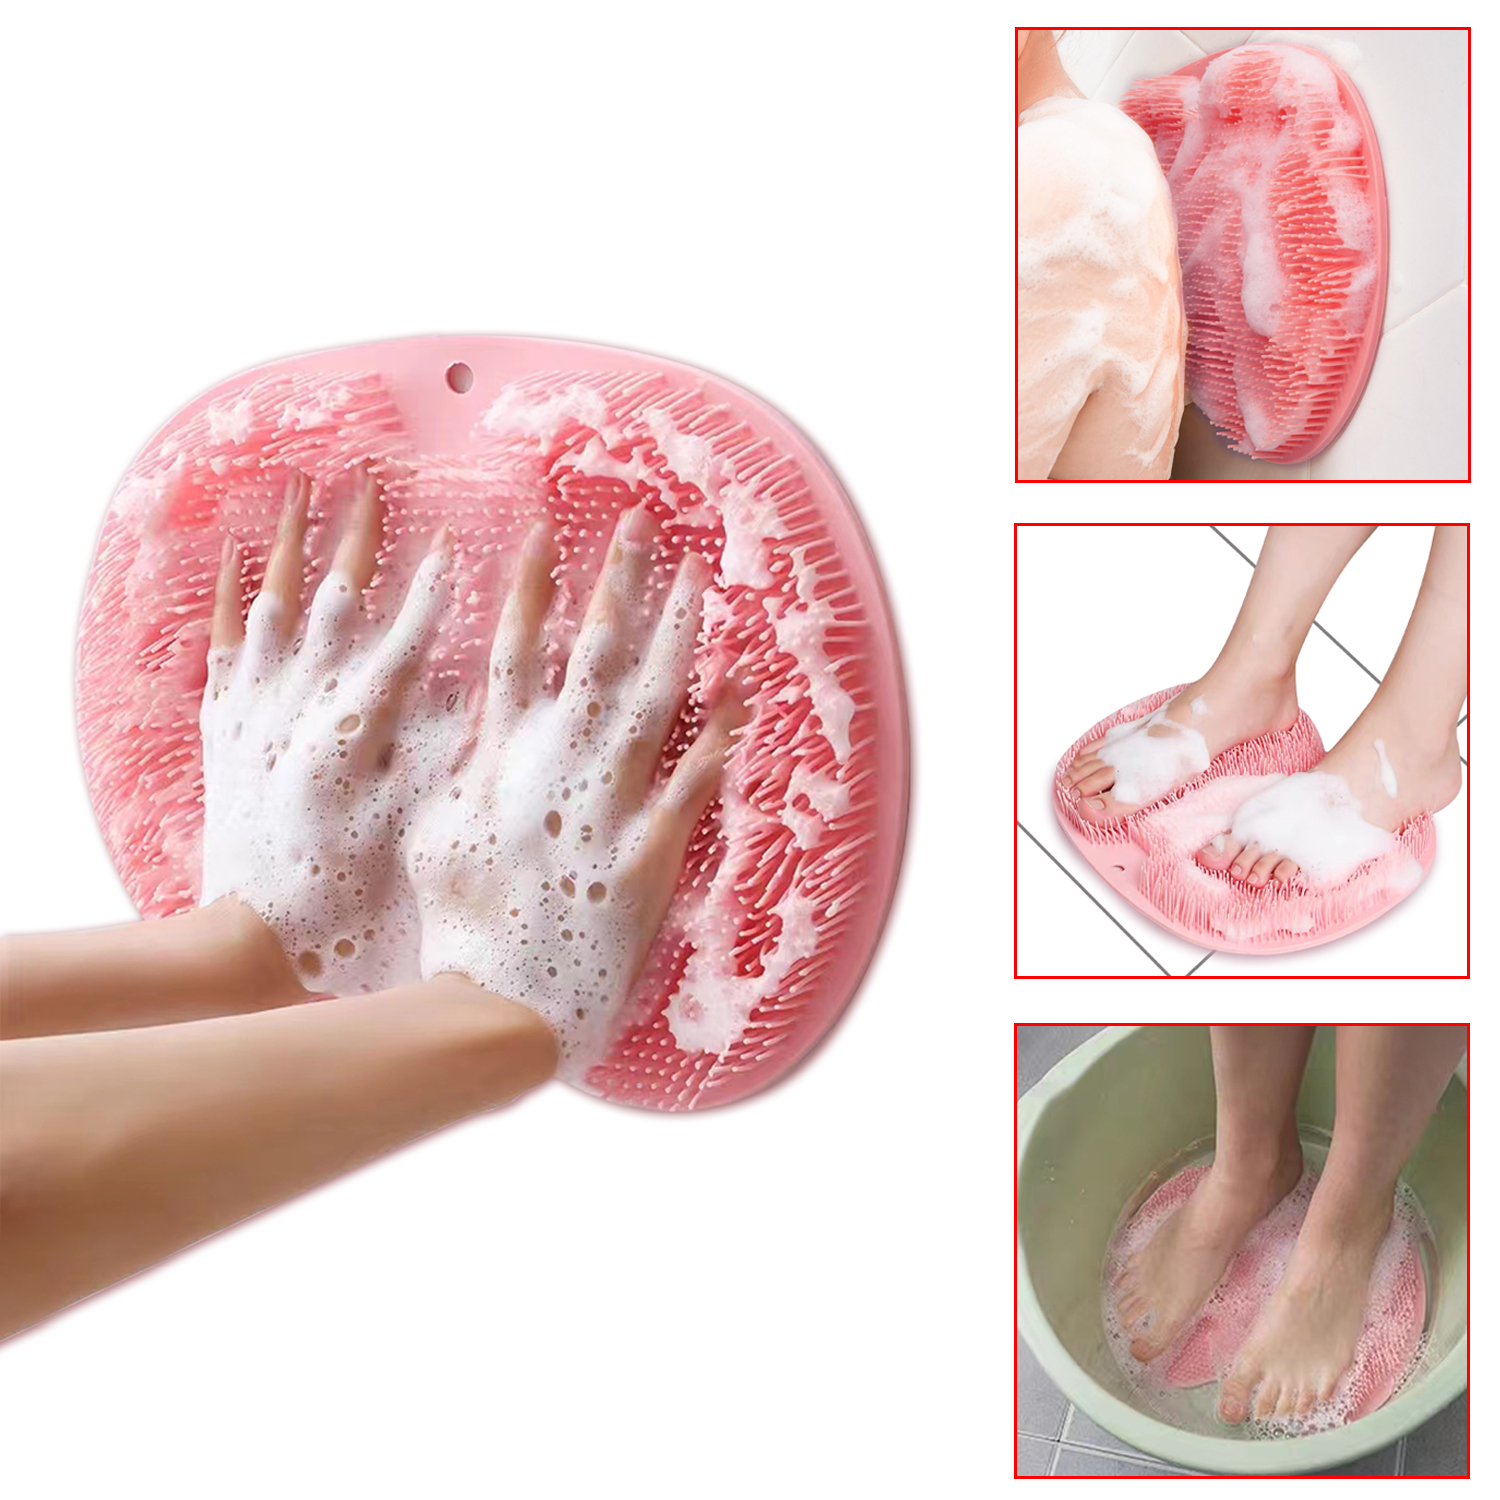 Lazy People Rub Feet Rub Back Artifact Bathroom Massage Bath To Remove Dead Skin Wash Feet Brush Feet Silicone Bathtub Non-slip Scrubbing Bath Pad